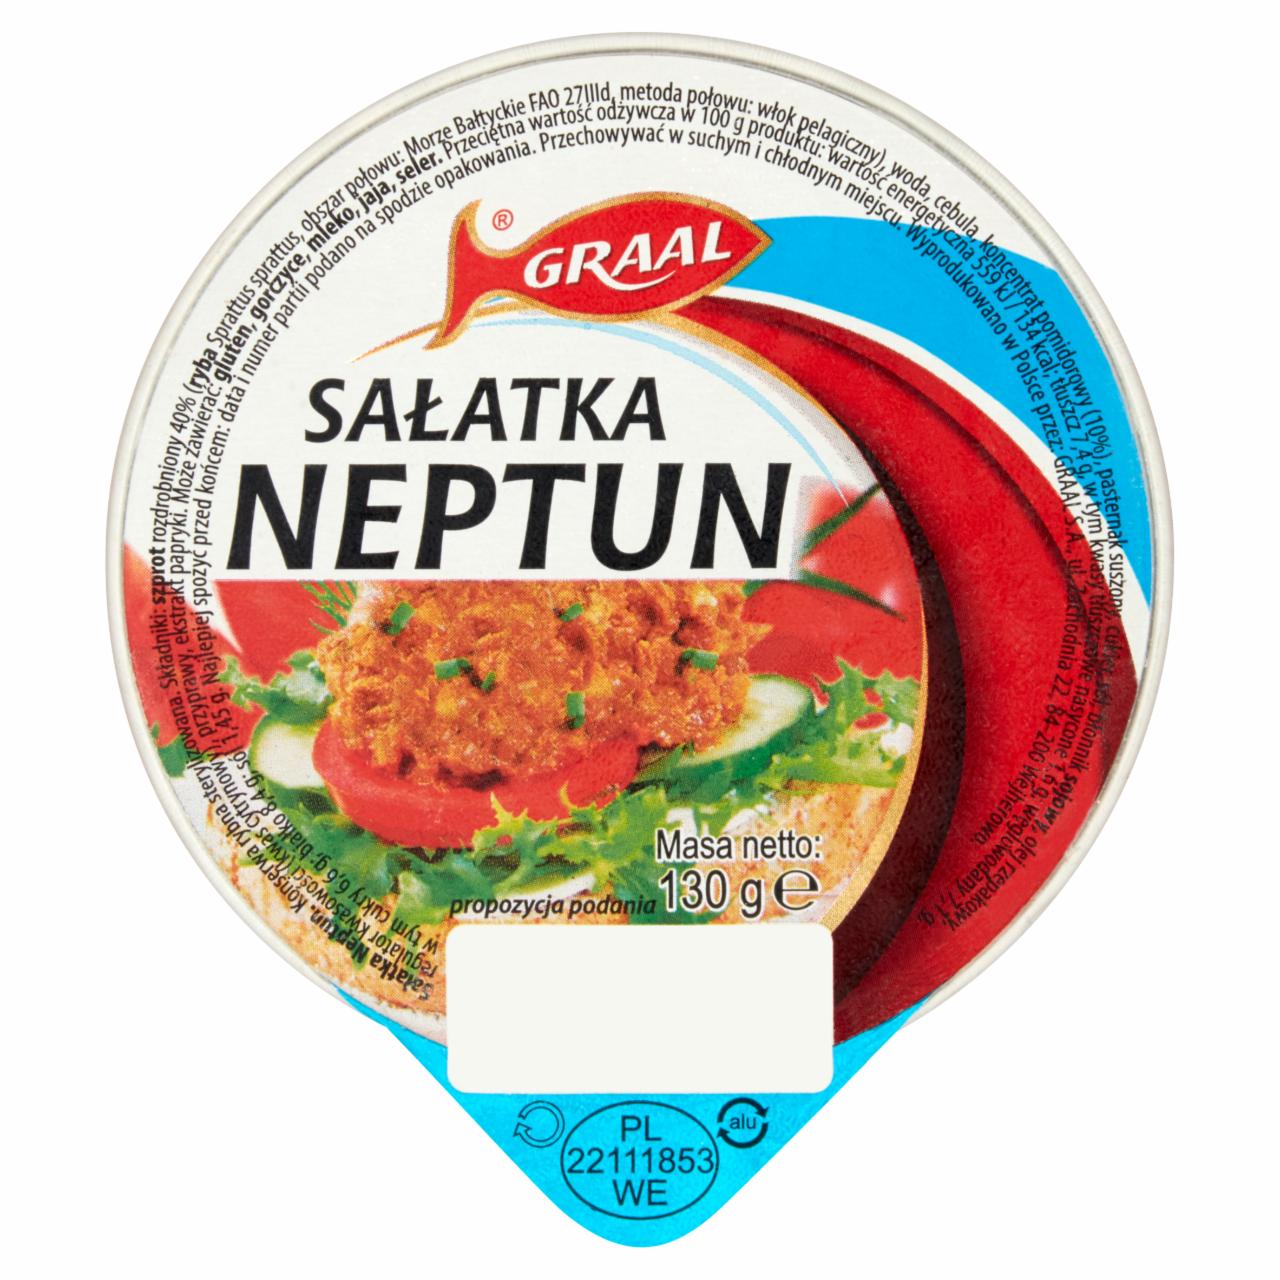 Photo - GRAAL Neptun Salad 130 g